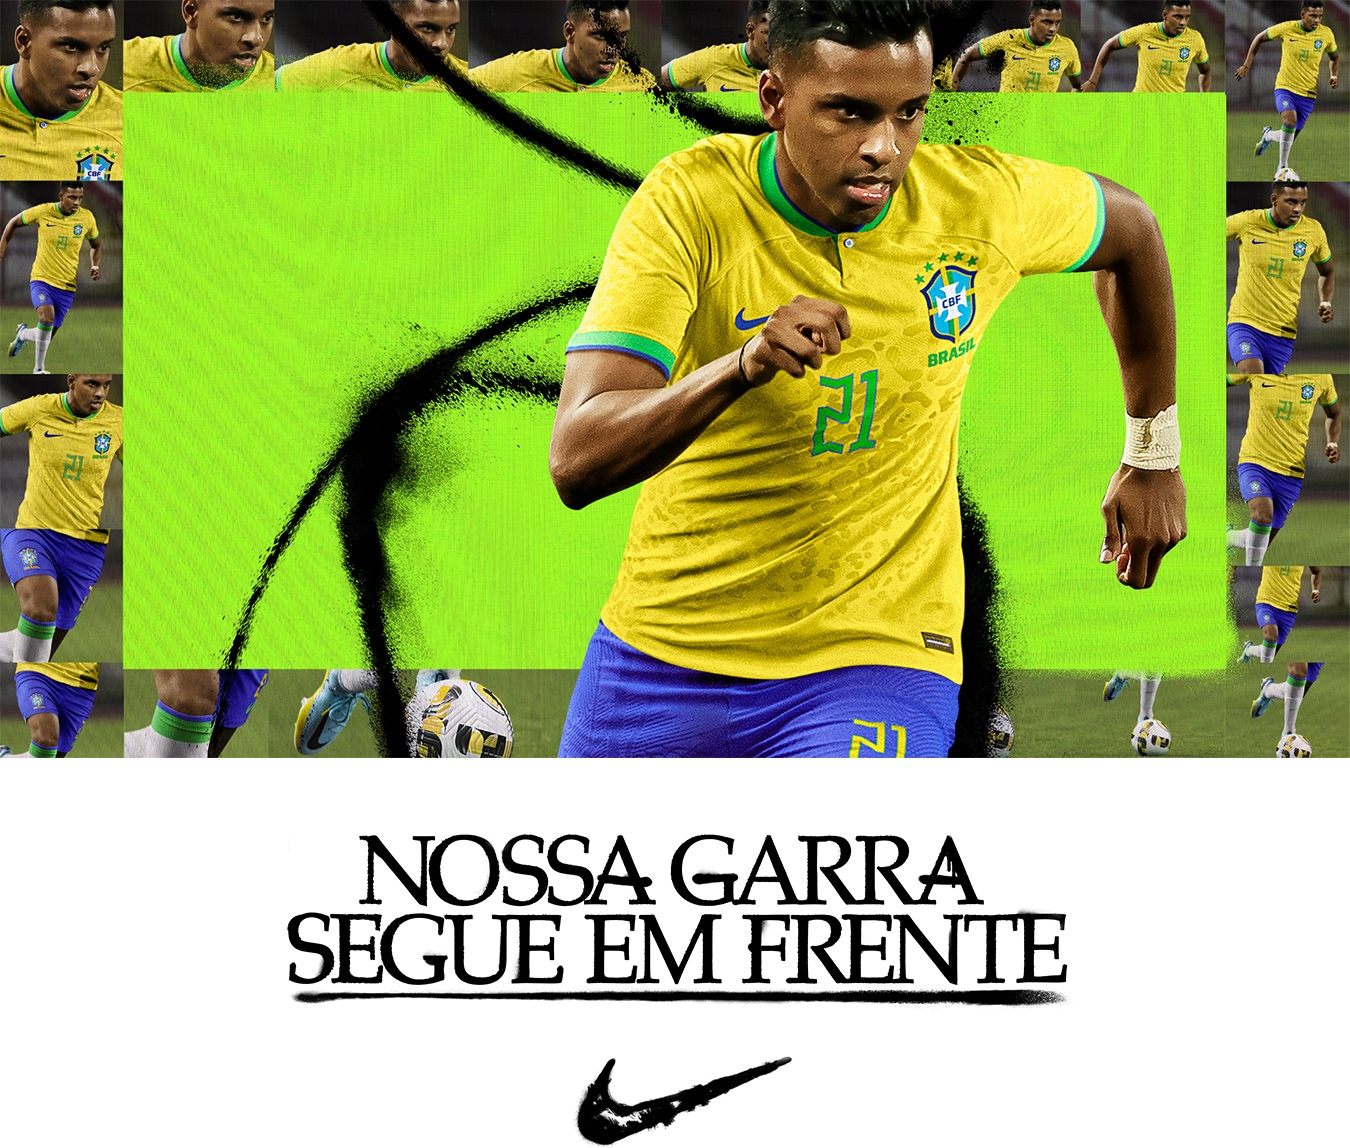 Camisa do Brasil - Camisa Seleção Brasileira - Centauro